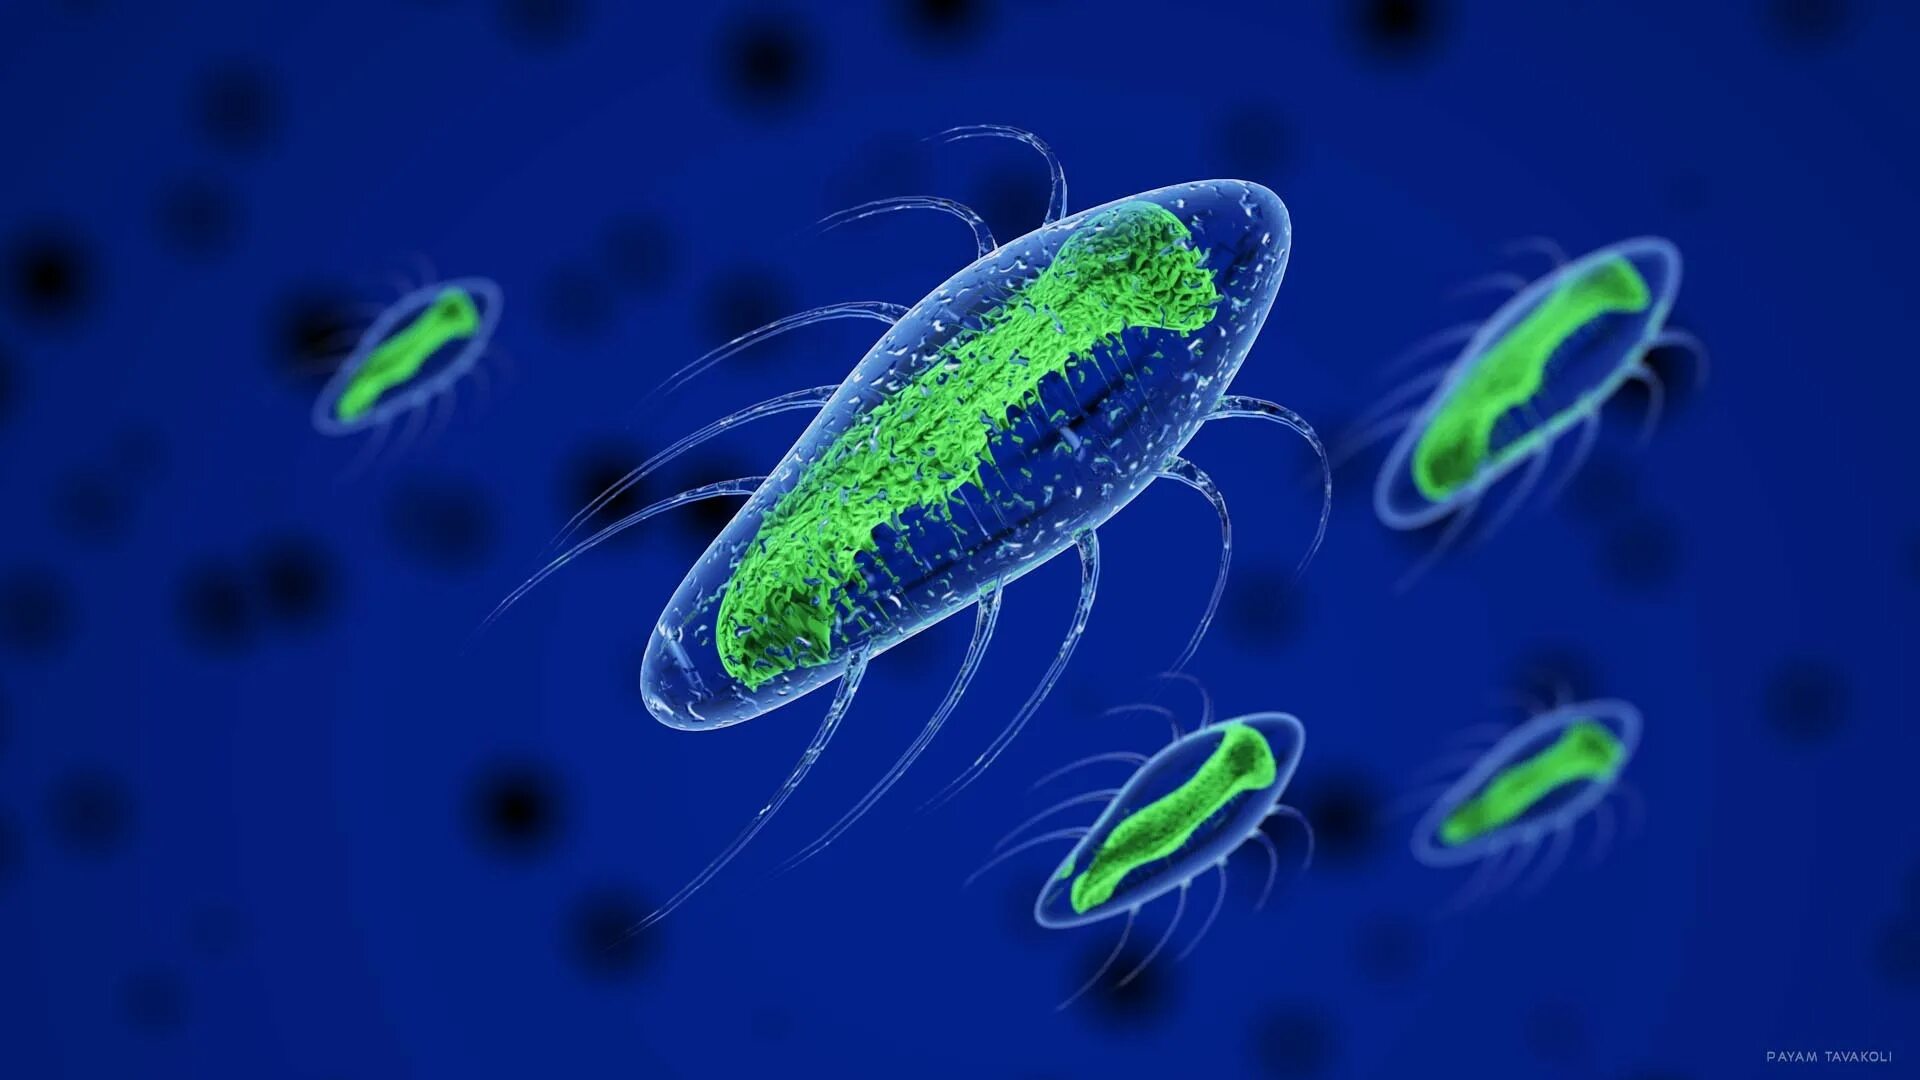 Бактерии одноклеточные прокариоты